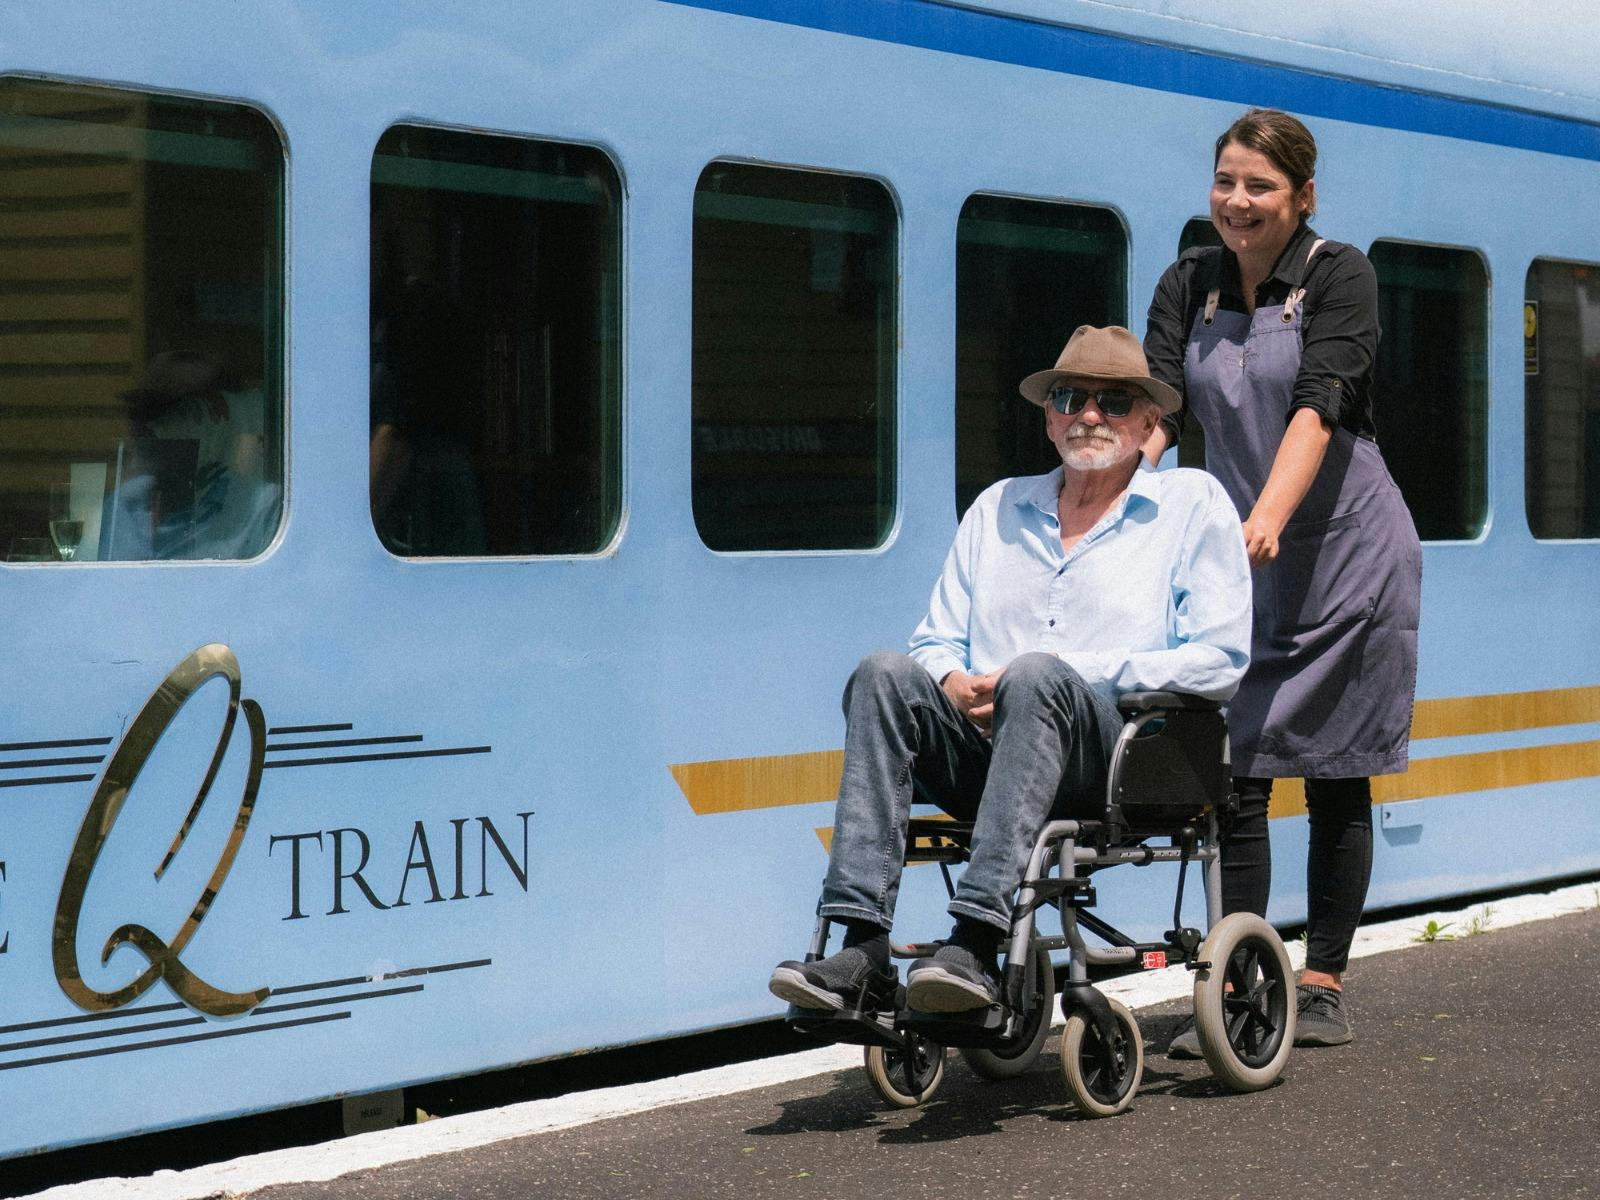 The Q Train waiter pushing a gentleman on a wheelchair next to The Q Train